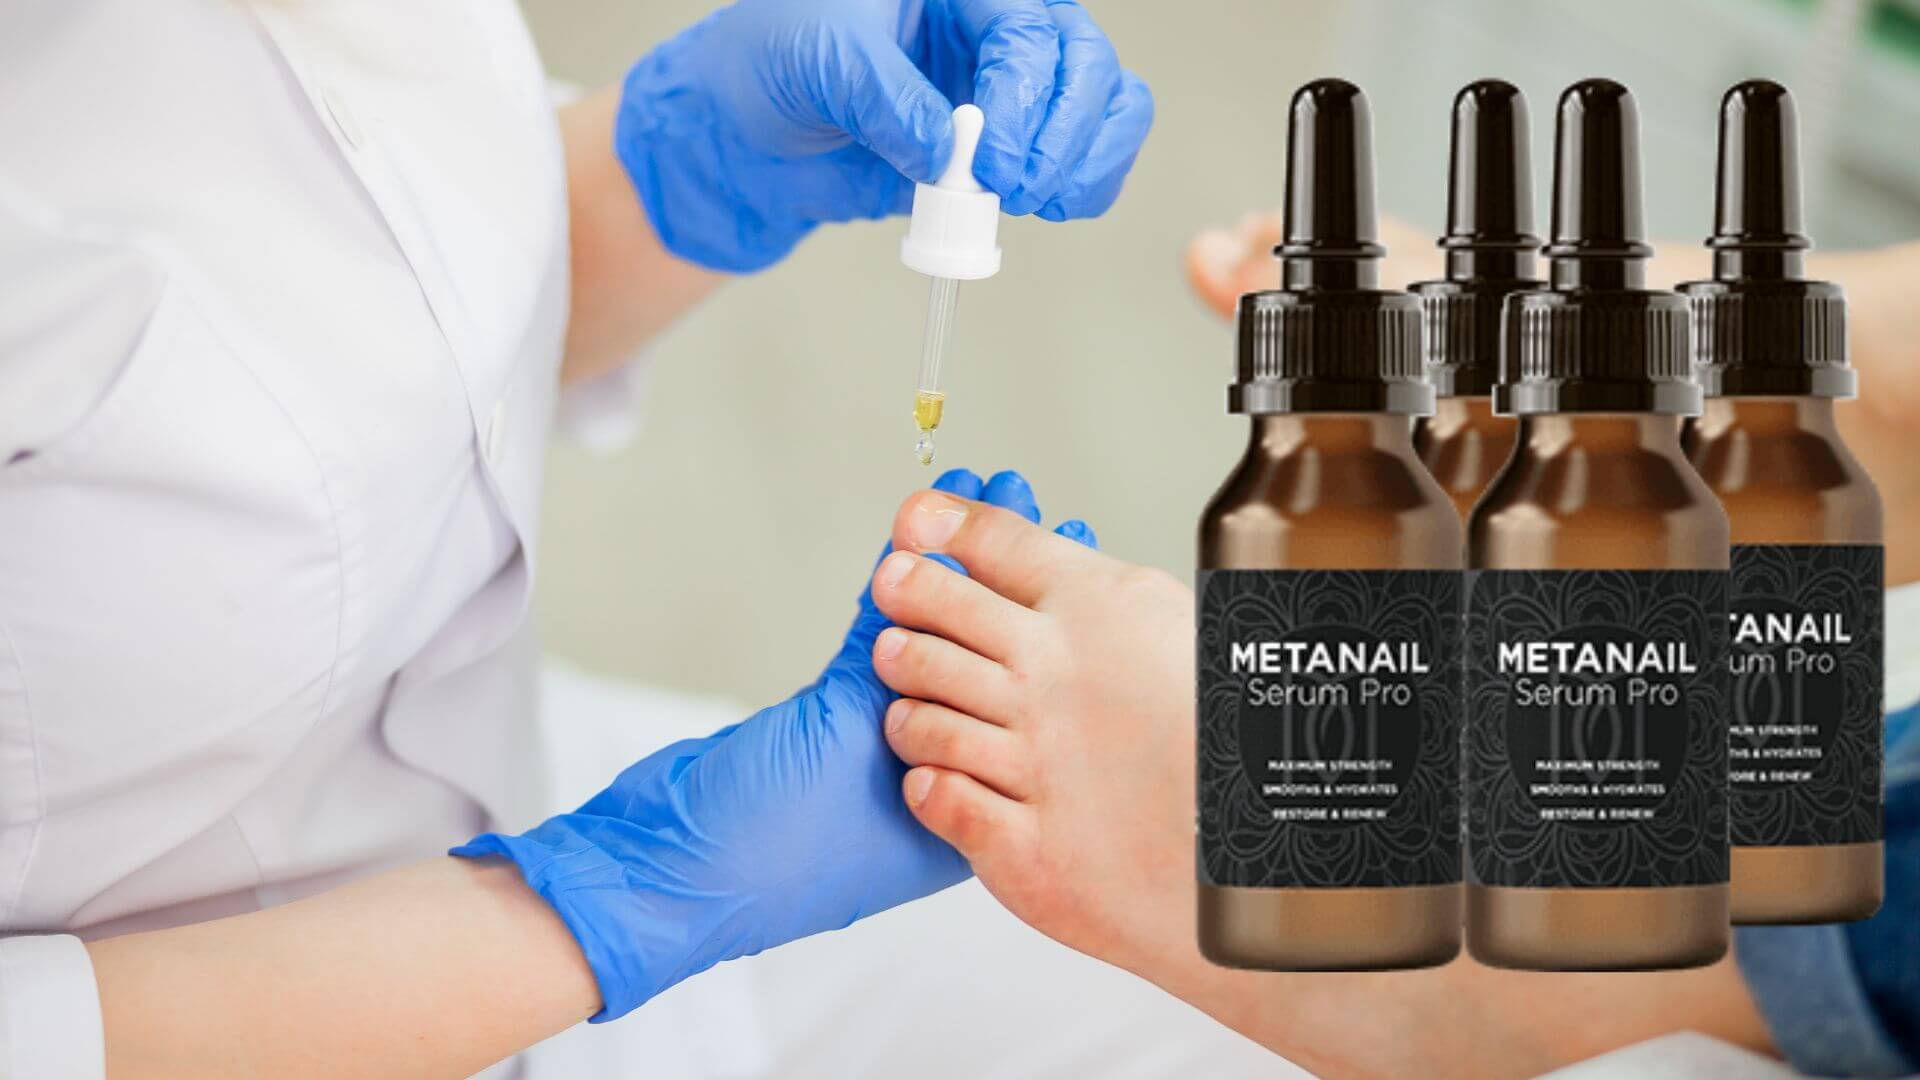 Metanail Serum Pro-bottles-4